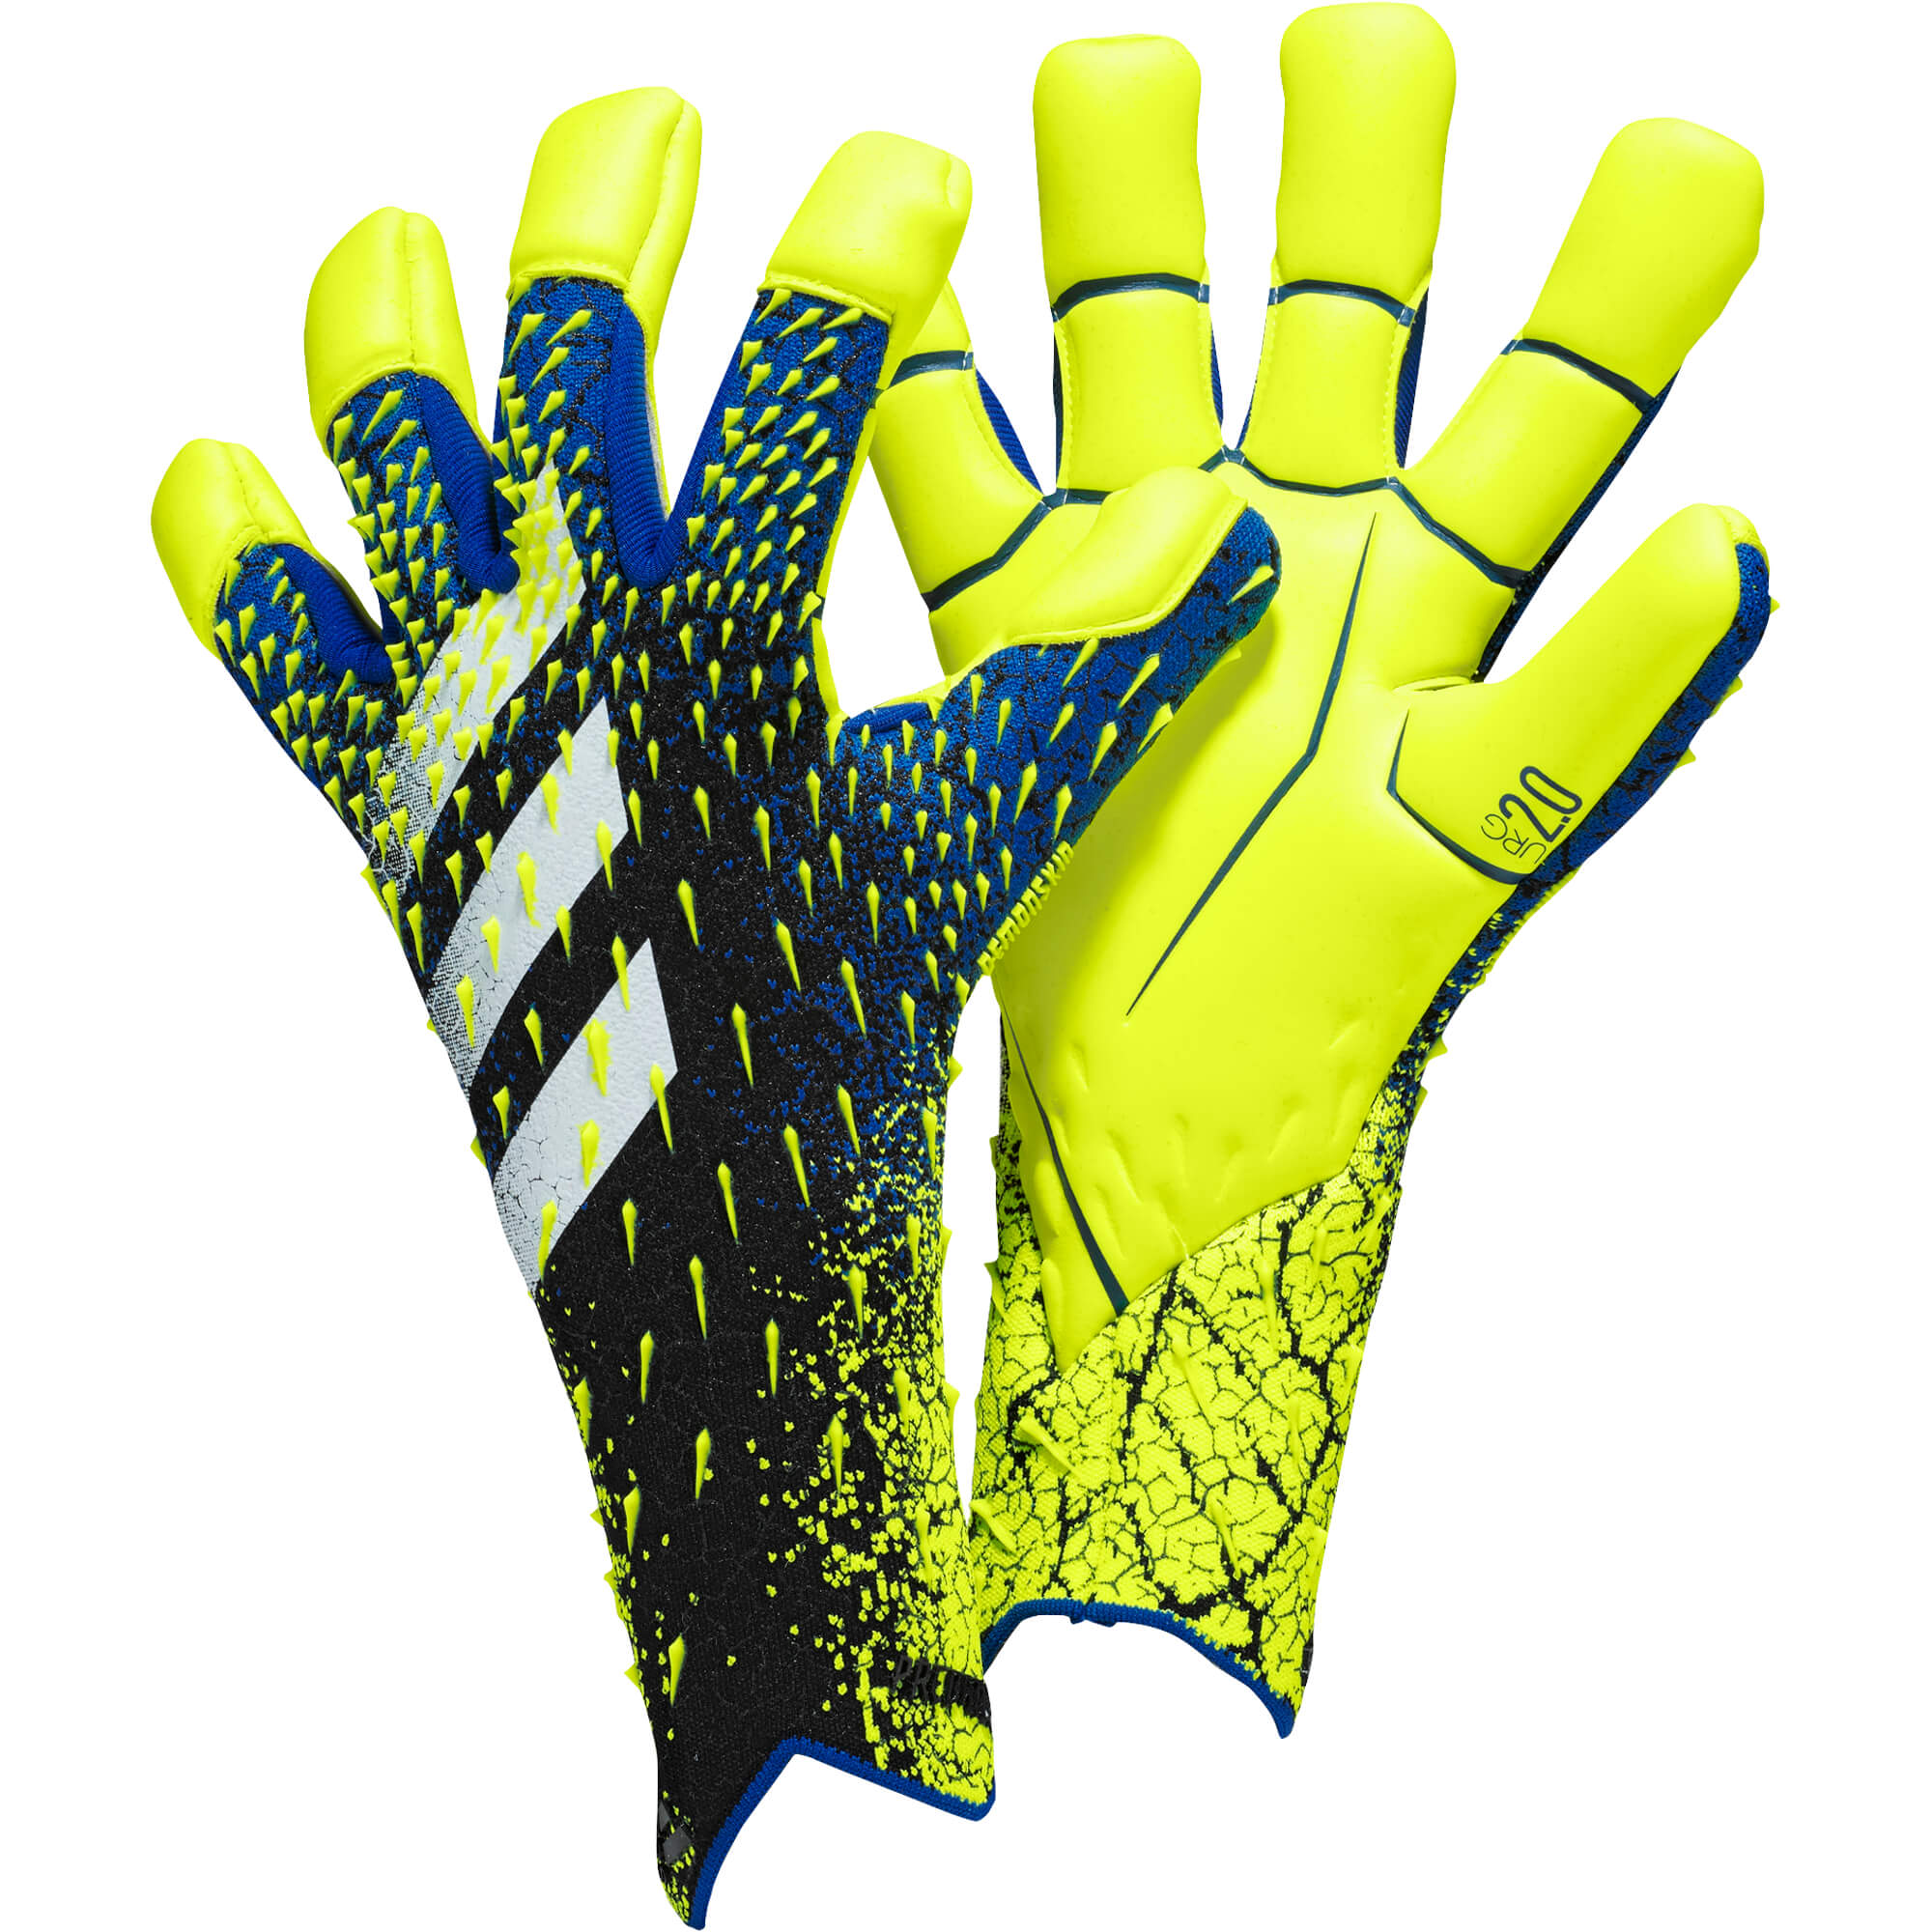 verraad Ontoegankelijk lever Adidas Predator GL Pro Hybrid Blue Solar Yellow Handschoenen Kopen?